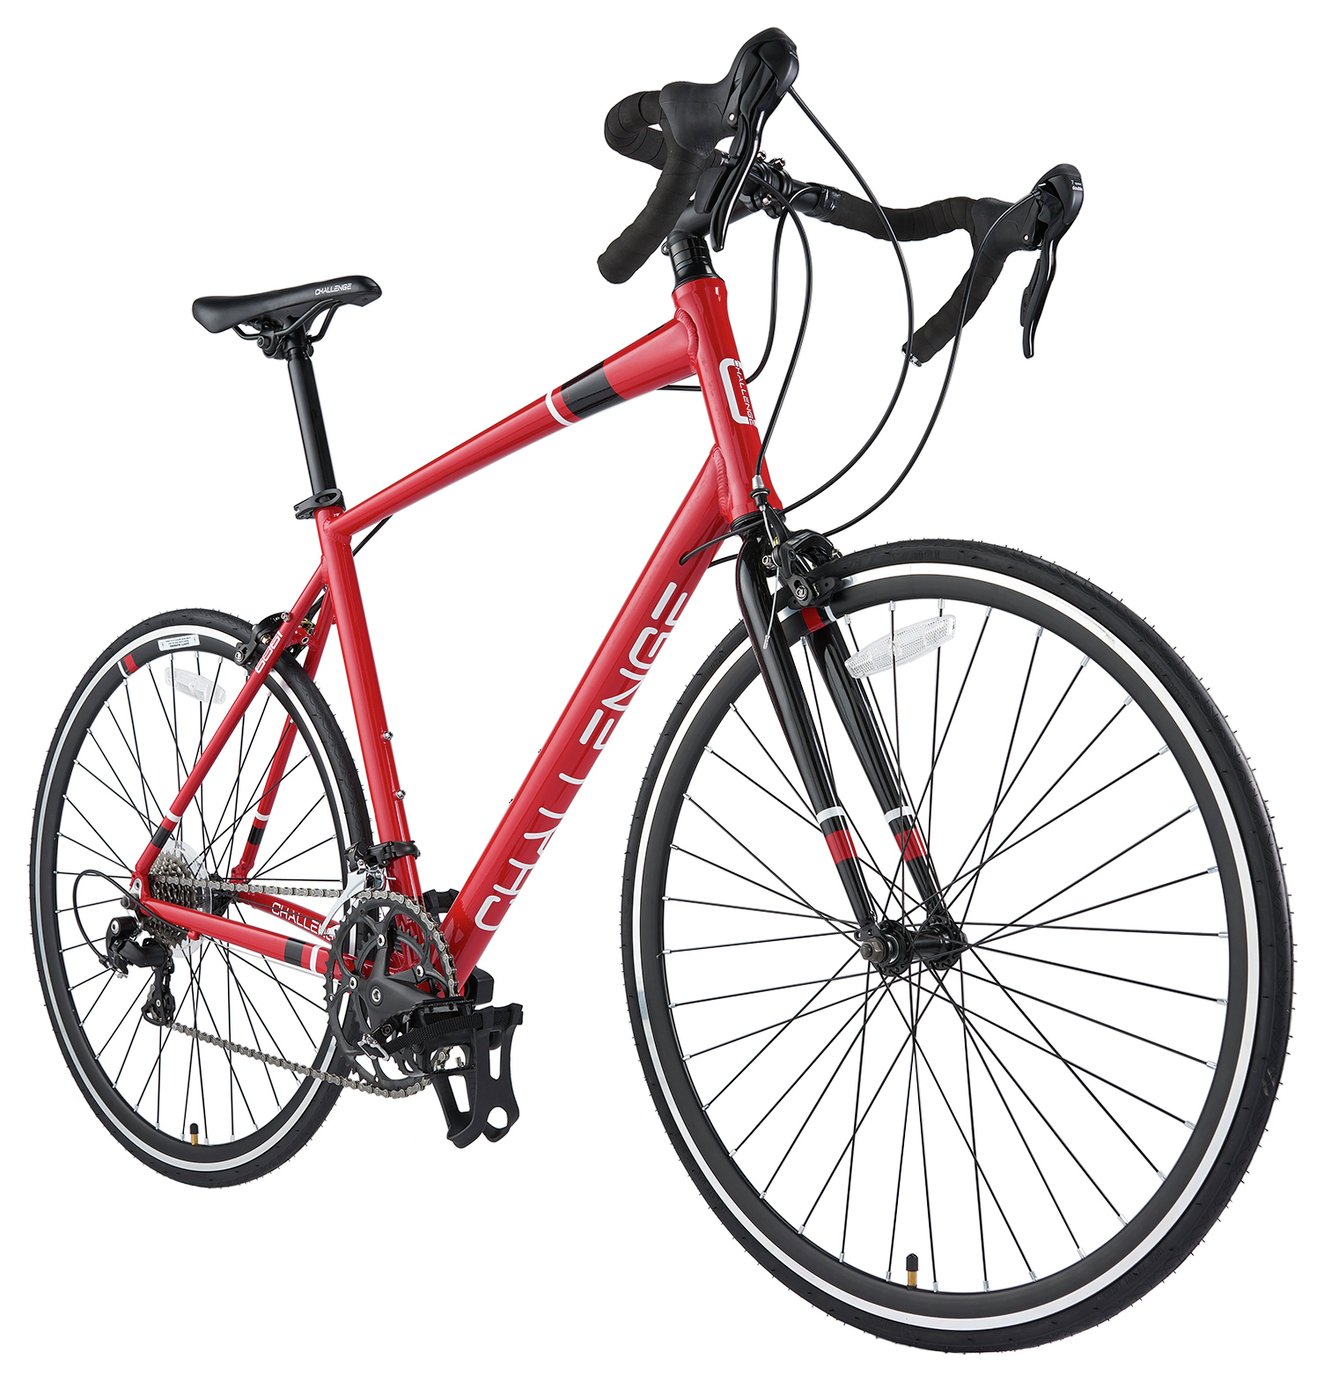 Challenge Plus CLR 0.1 700C Wheel Size Unisex Road Bike Review